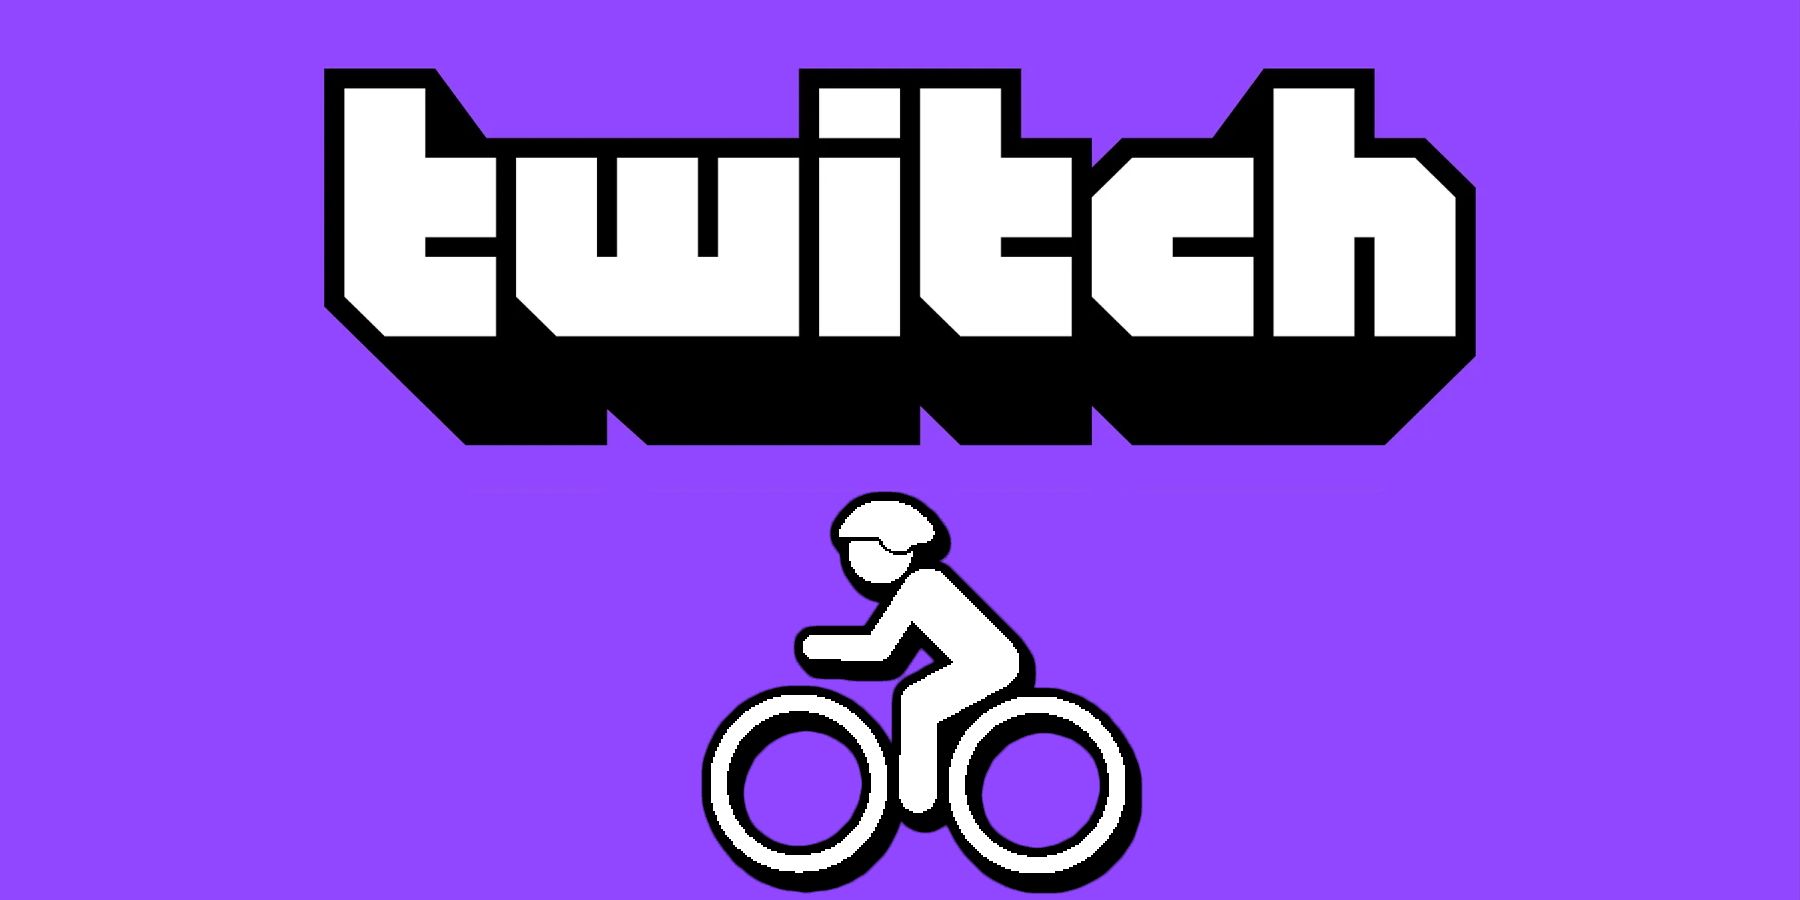 Twitch logo with a bike icon